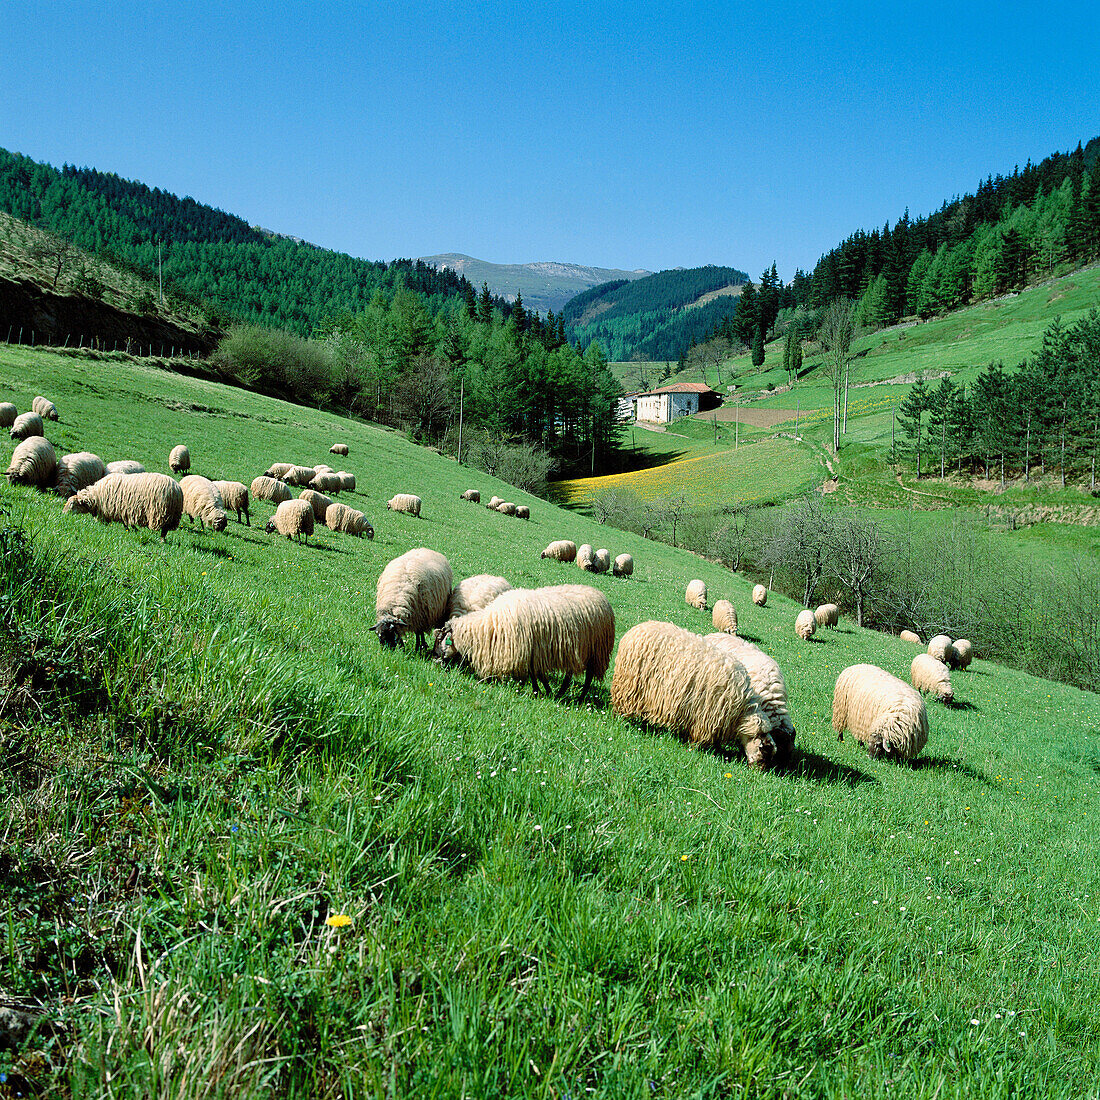 Sheep, Brincola, Legazpi, Guipúzcoa, Basque Country, Spain